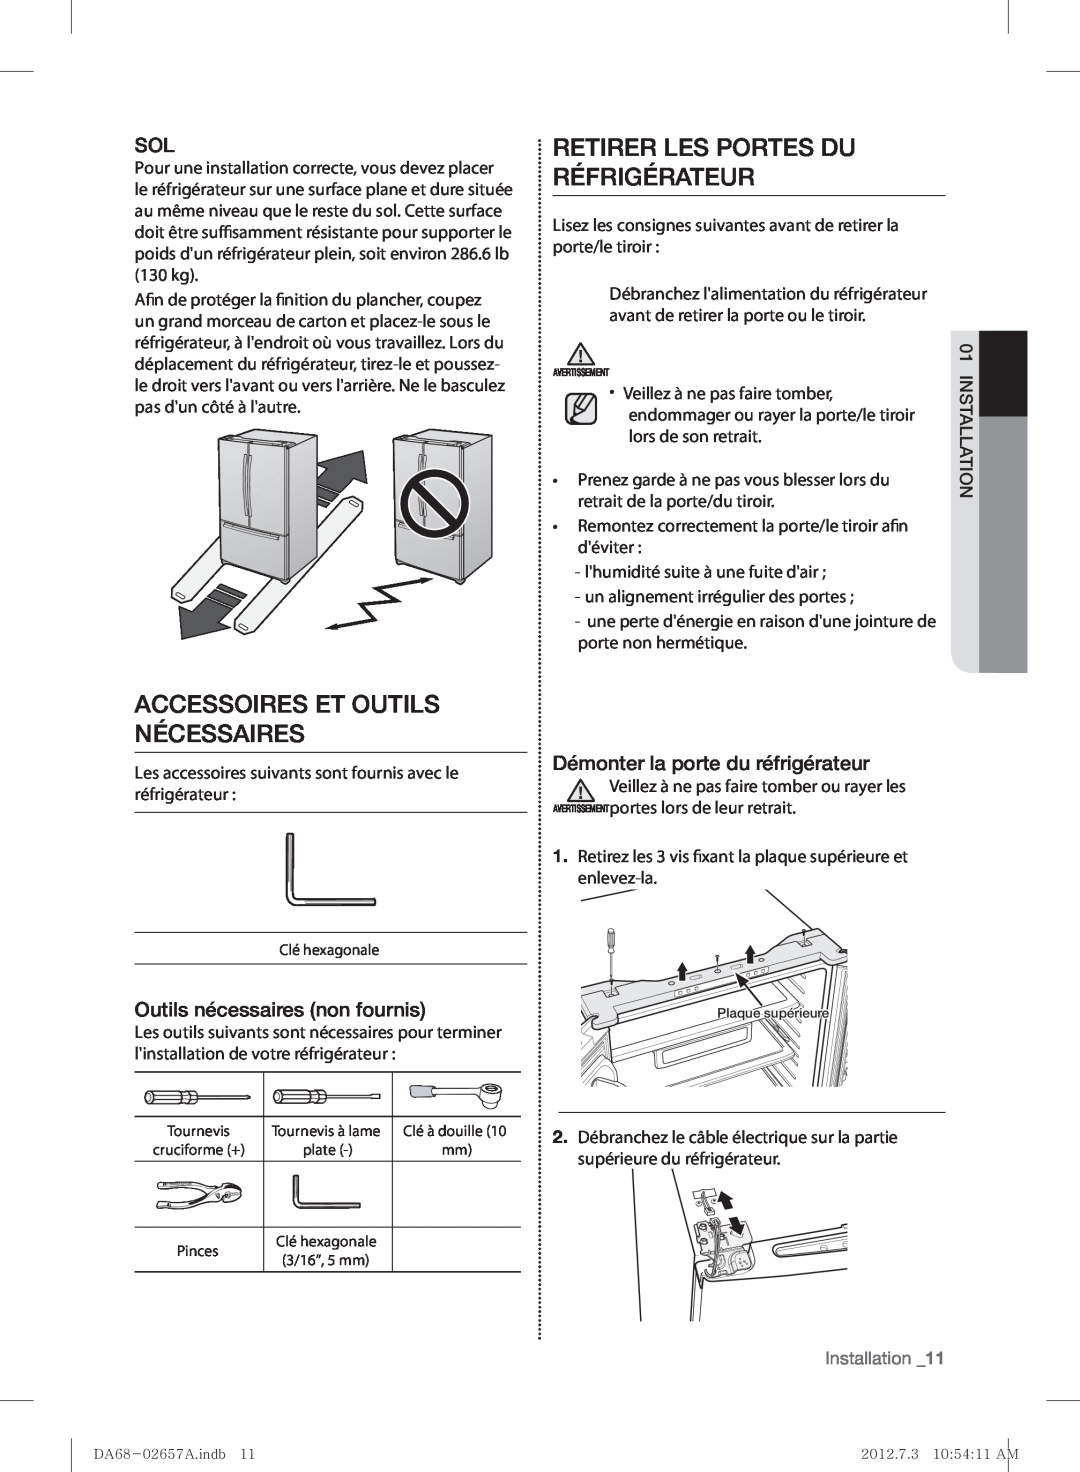 Samsung RF221NCTABC Accessoires Et Outils Nécessaires, Retirer Les Portes Du Réfrigérateur, Outils nécessaires non fournis 